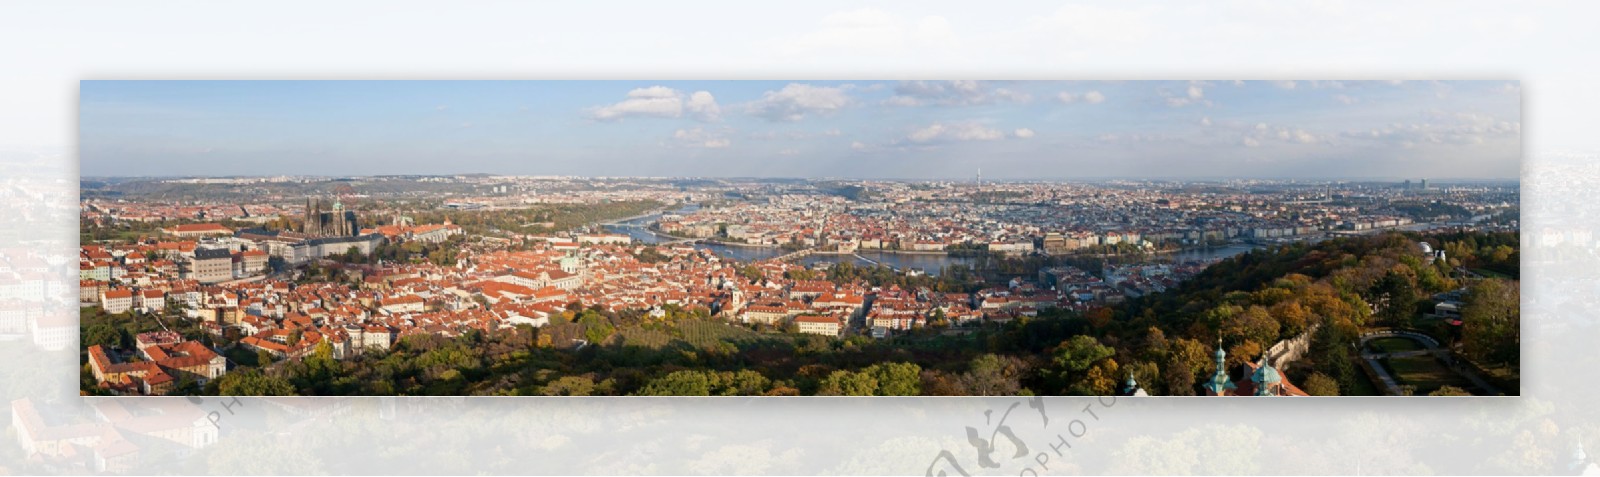 捷克布拉格全景图片